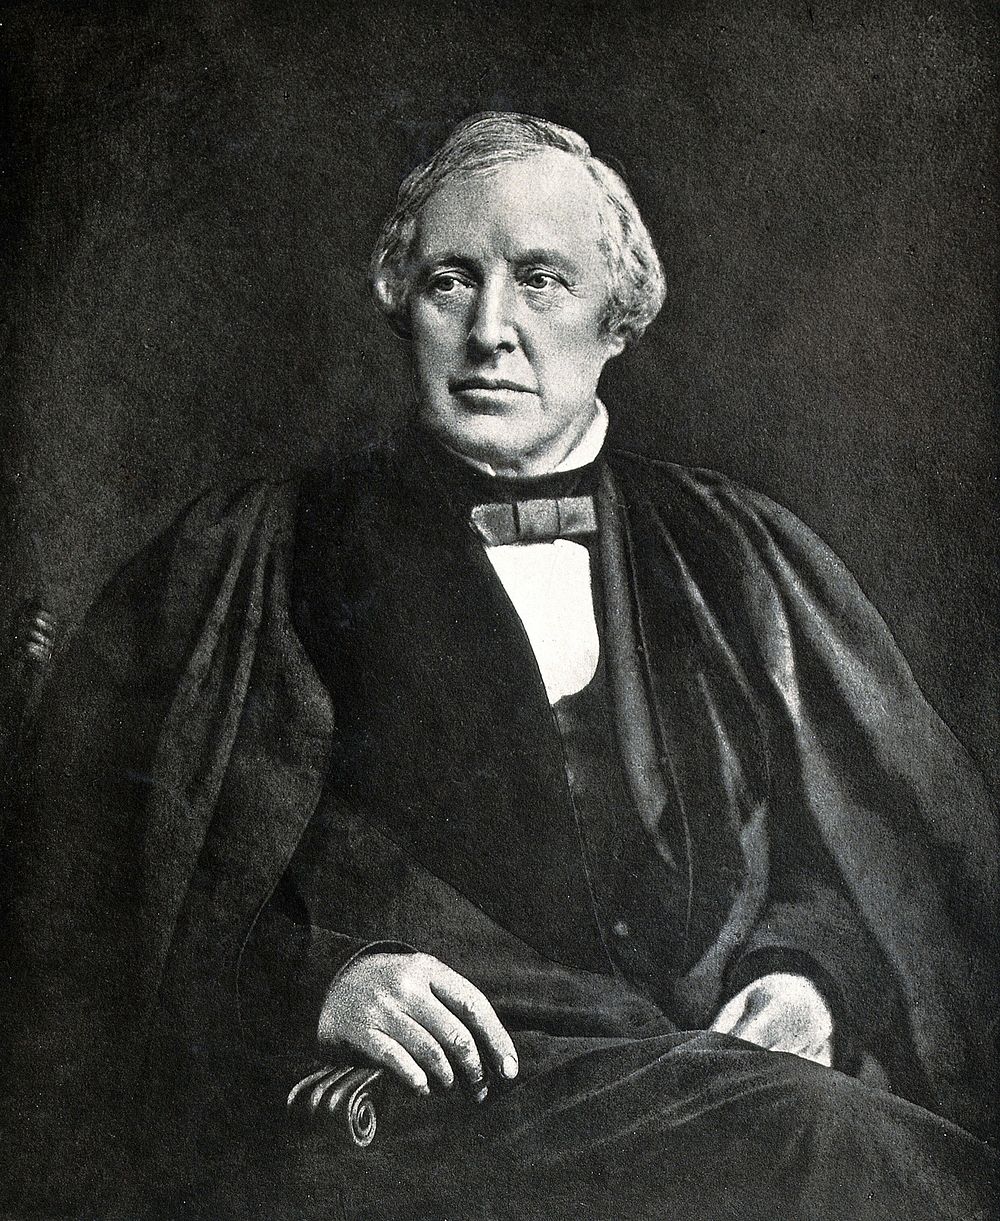 Allen Thomson. Photograph after a mezzotint.